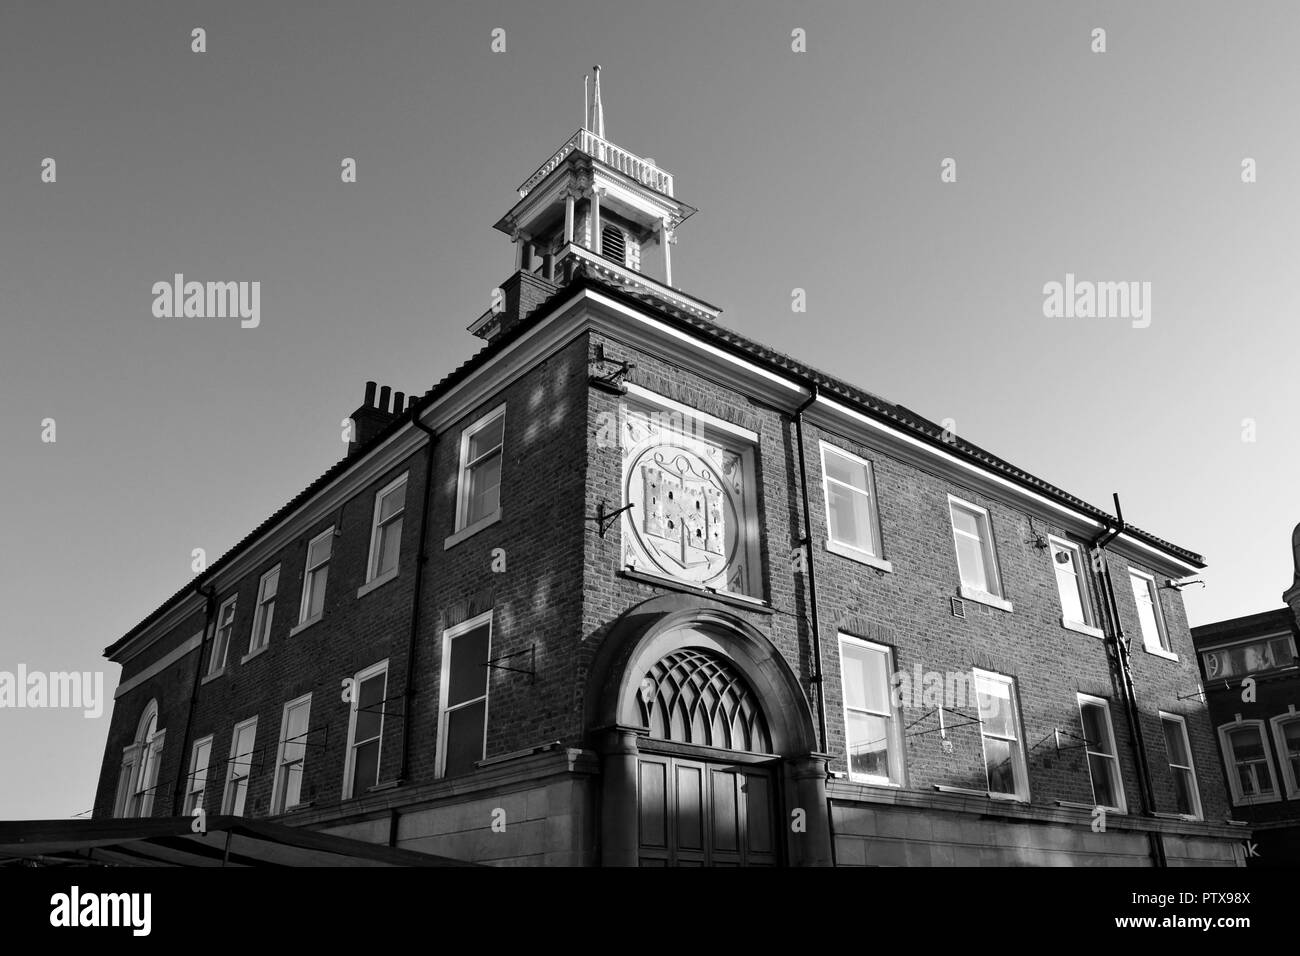 Imagen en blanco y negro del histórico Ayuntamiento de Stockton, Stockton-on-Tees, Reino Unido, tomada en una soleada mañana de otoño con un cielo claro. Foto de stock